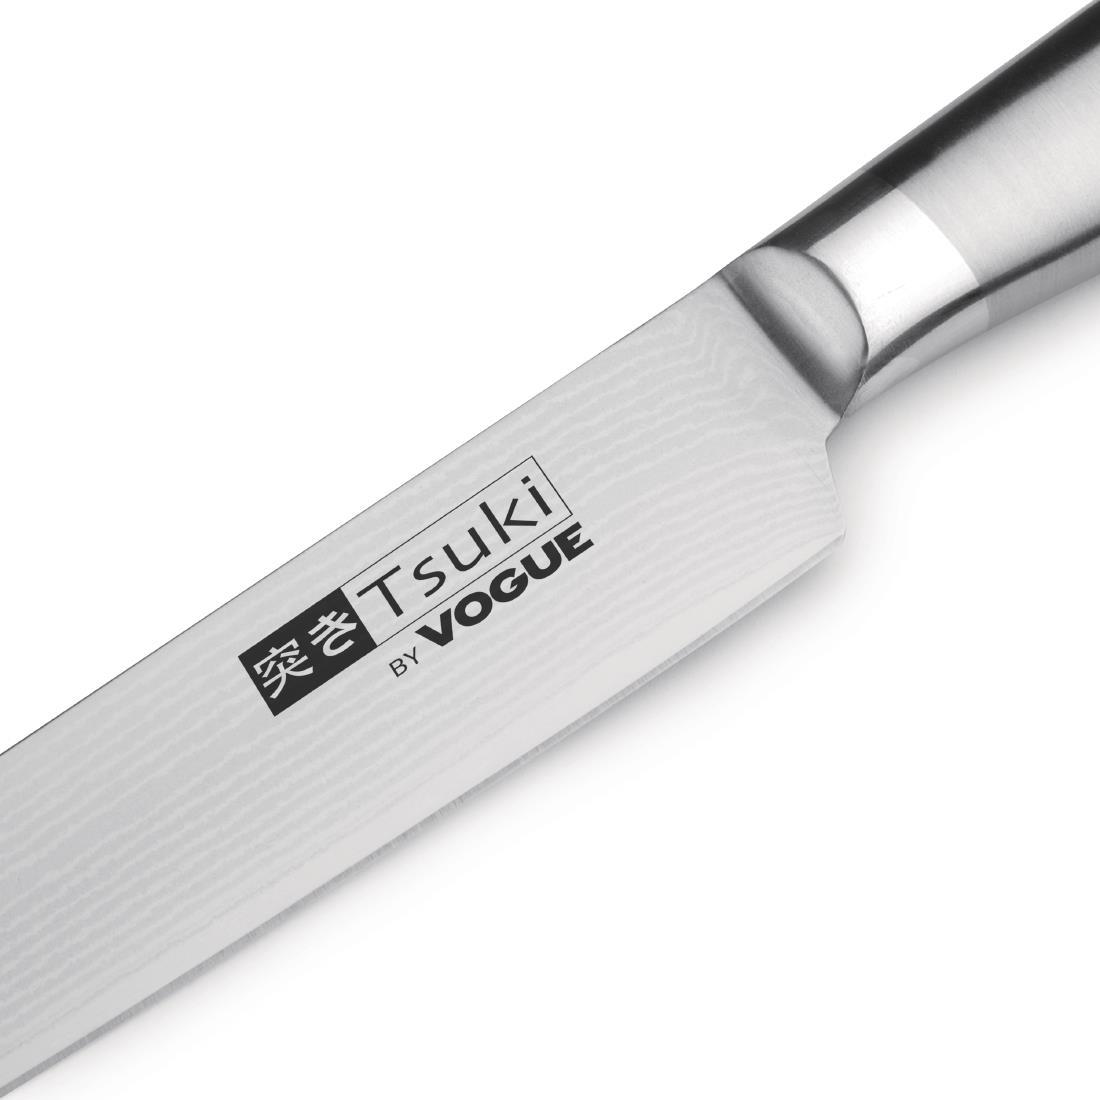 Vogue Tsuki Series 8 Carving Knife 20cm - DA445  - 2